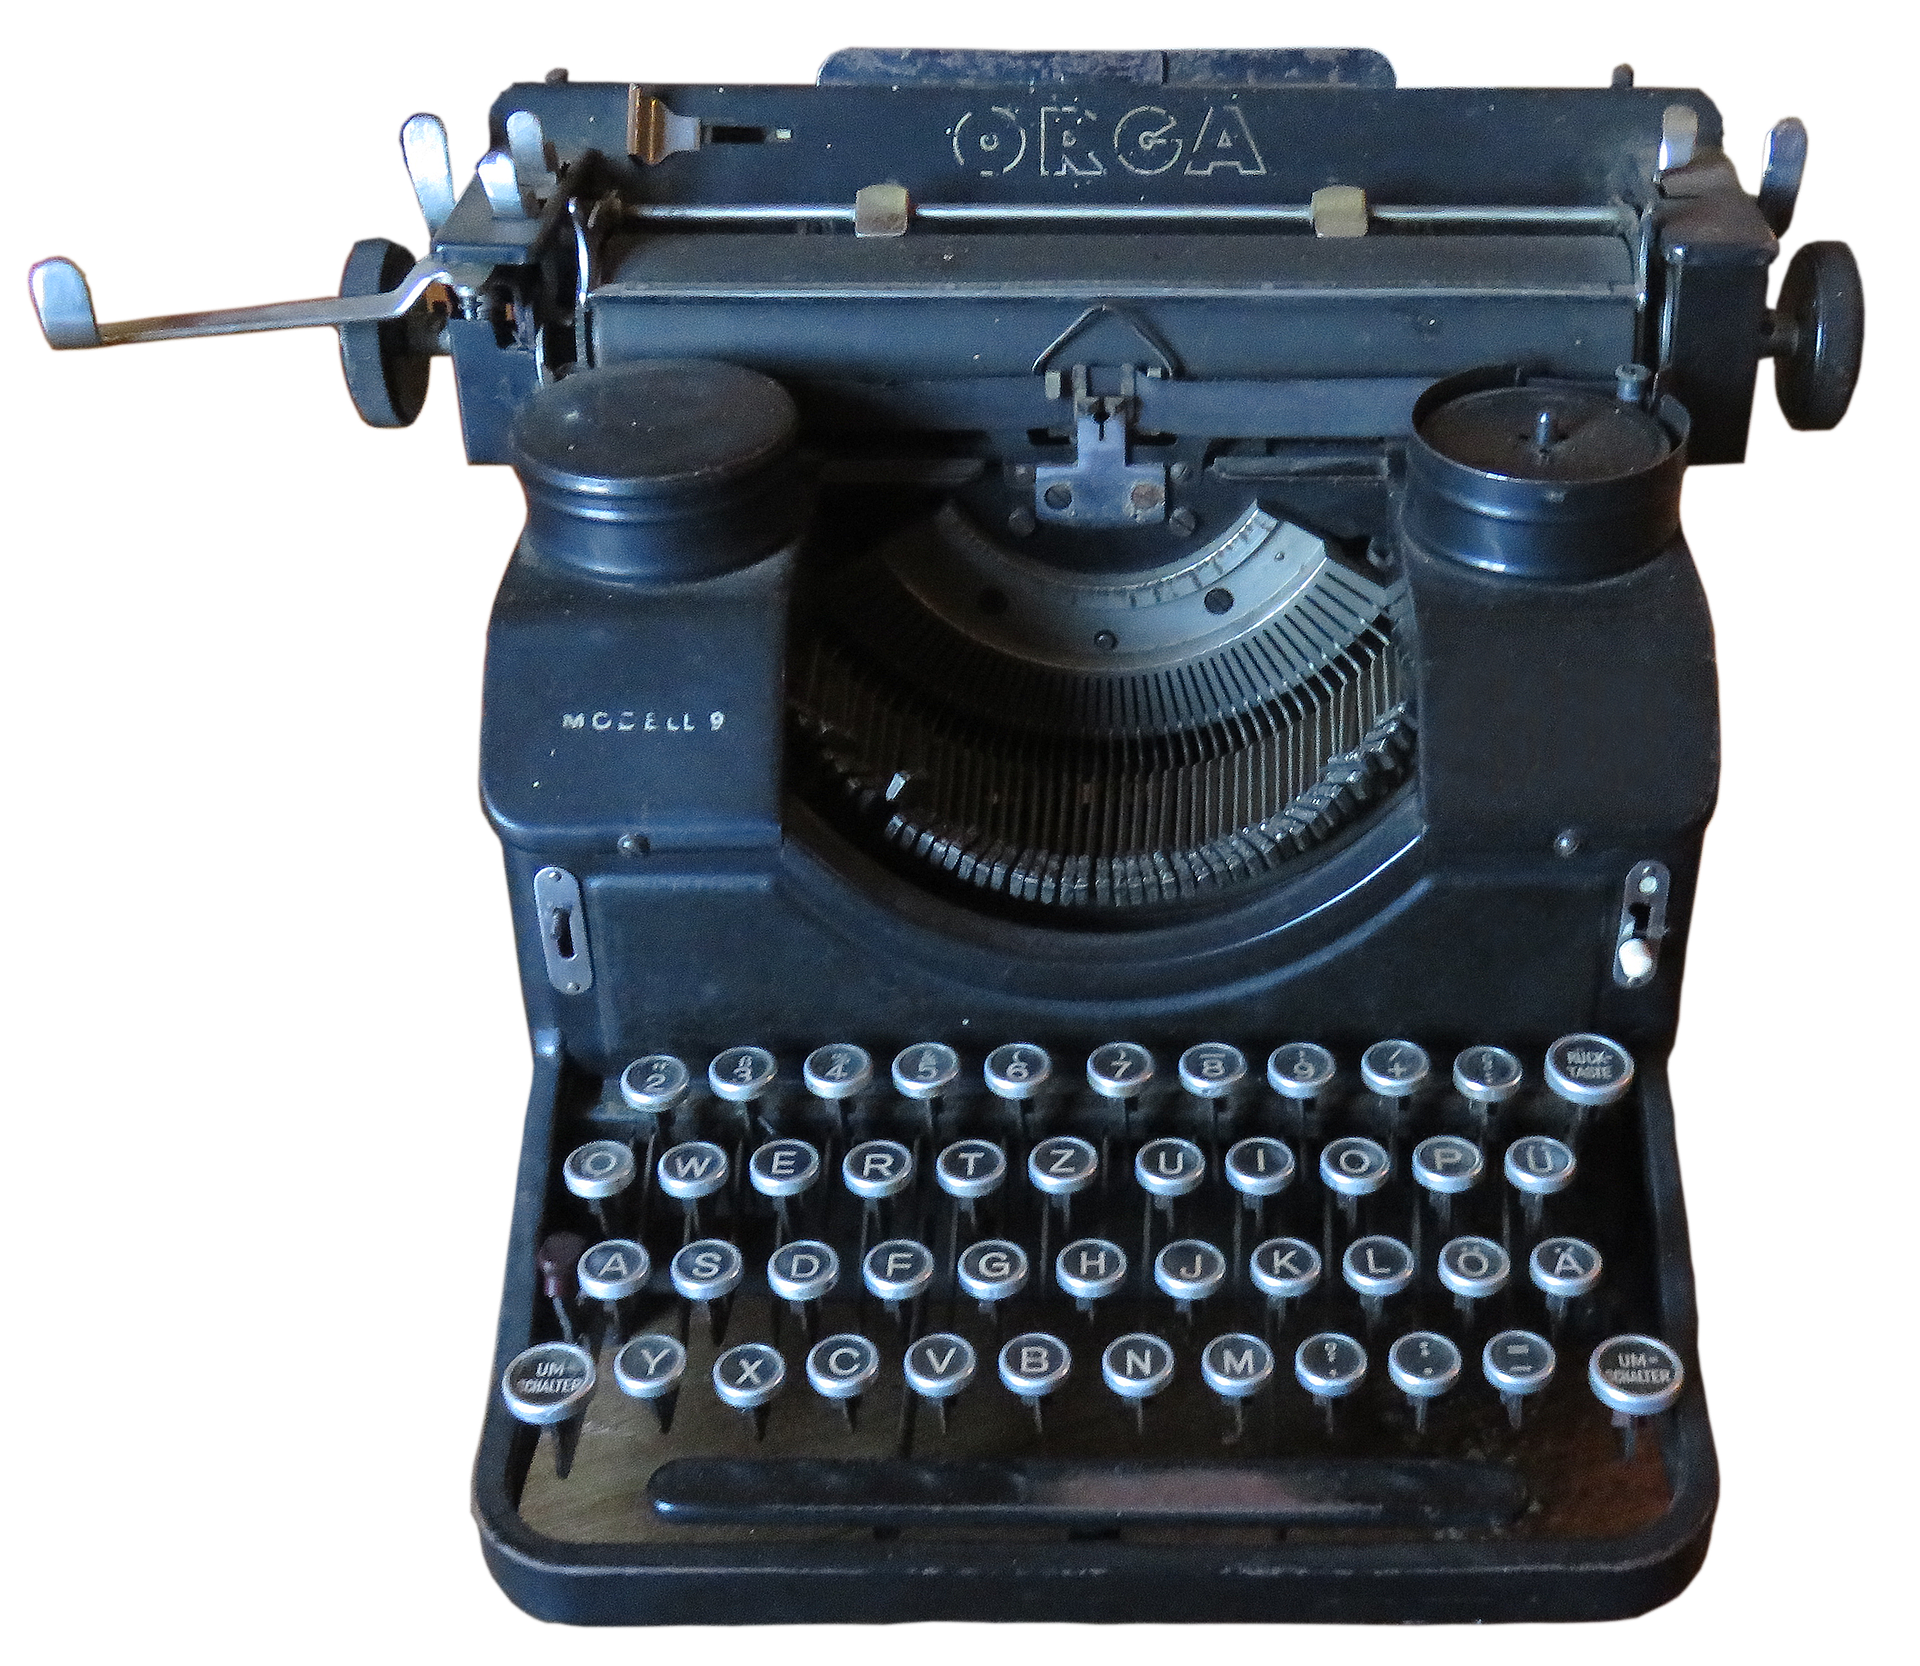 Immagine antica della macchina da scrivere PNG Immagine Trasparente